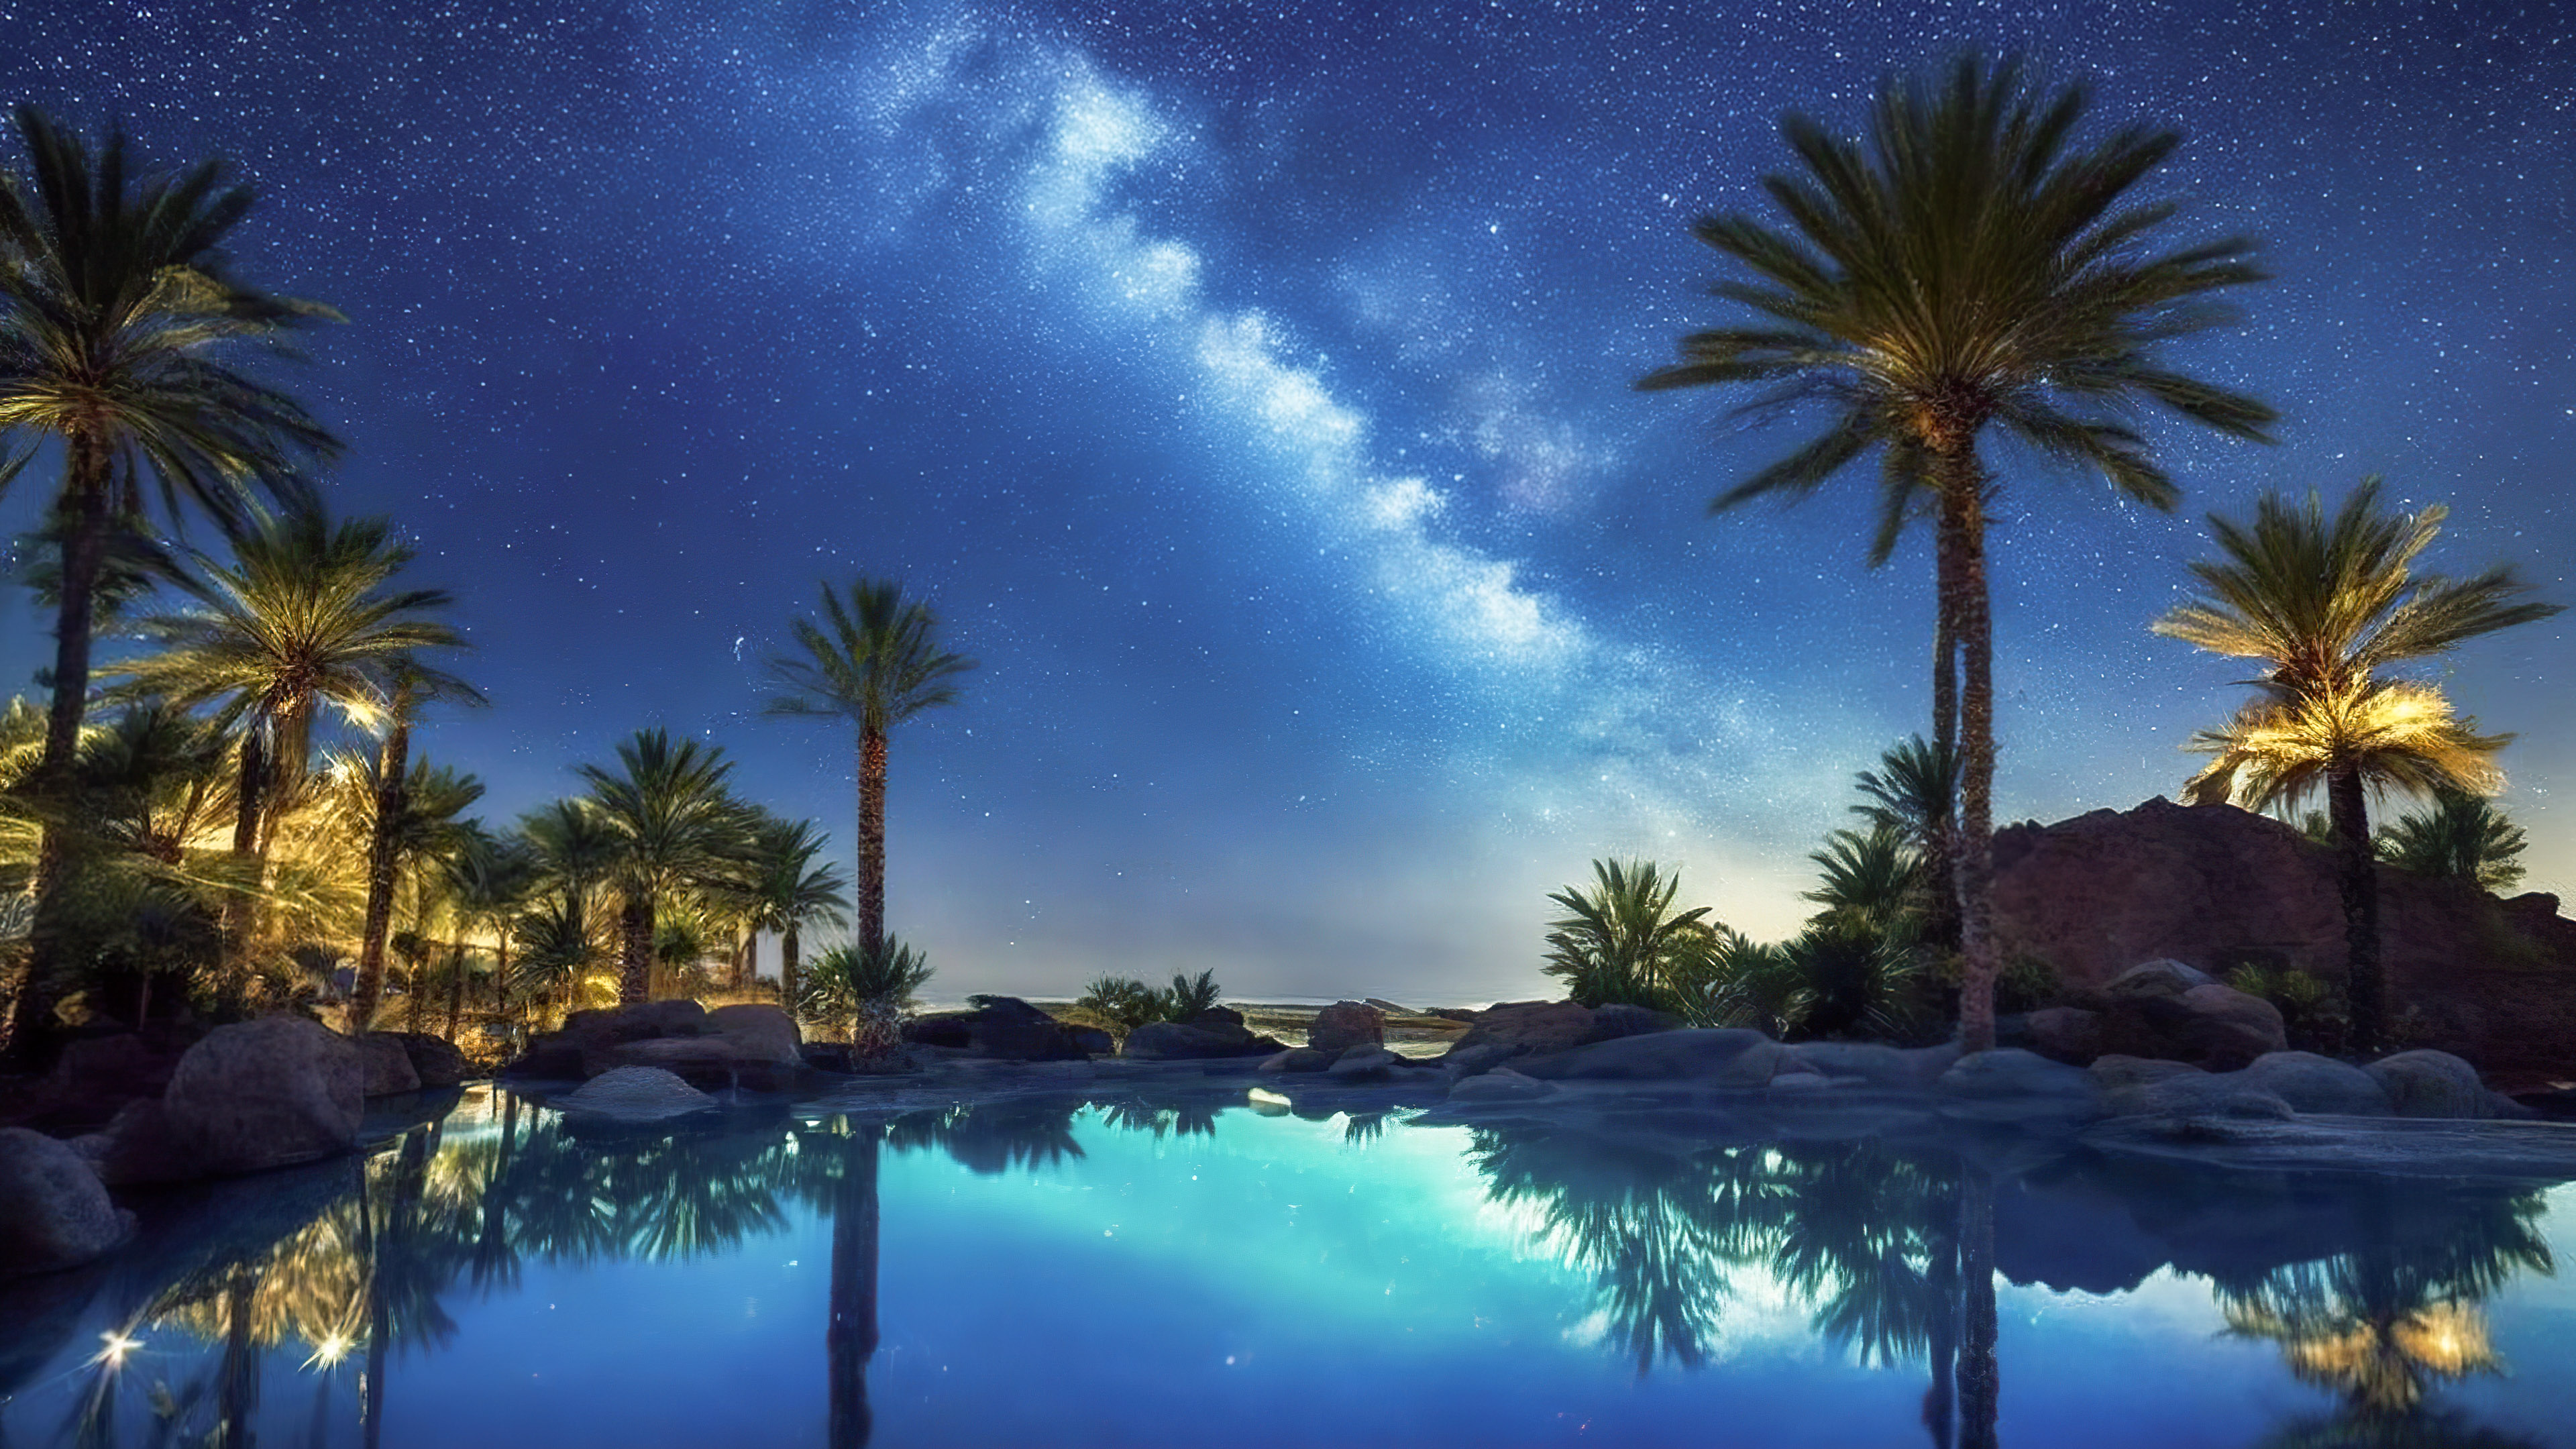 Ornez votre appareil avec notre fond d'écran de ciel du soir, capturant une oasis désertique sous la Voie lactée, où des palmiers entourent une piscine sereine et étoilée.